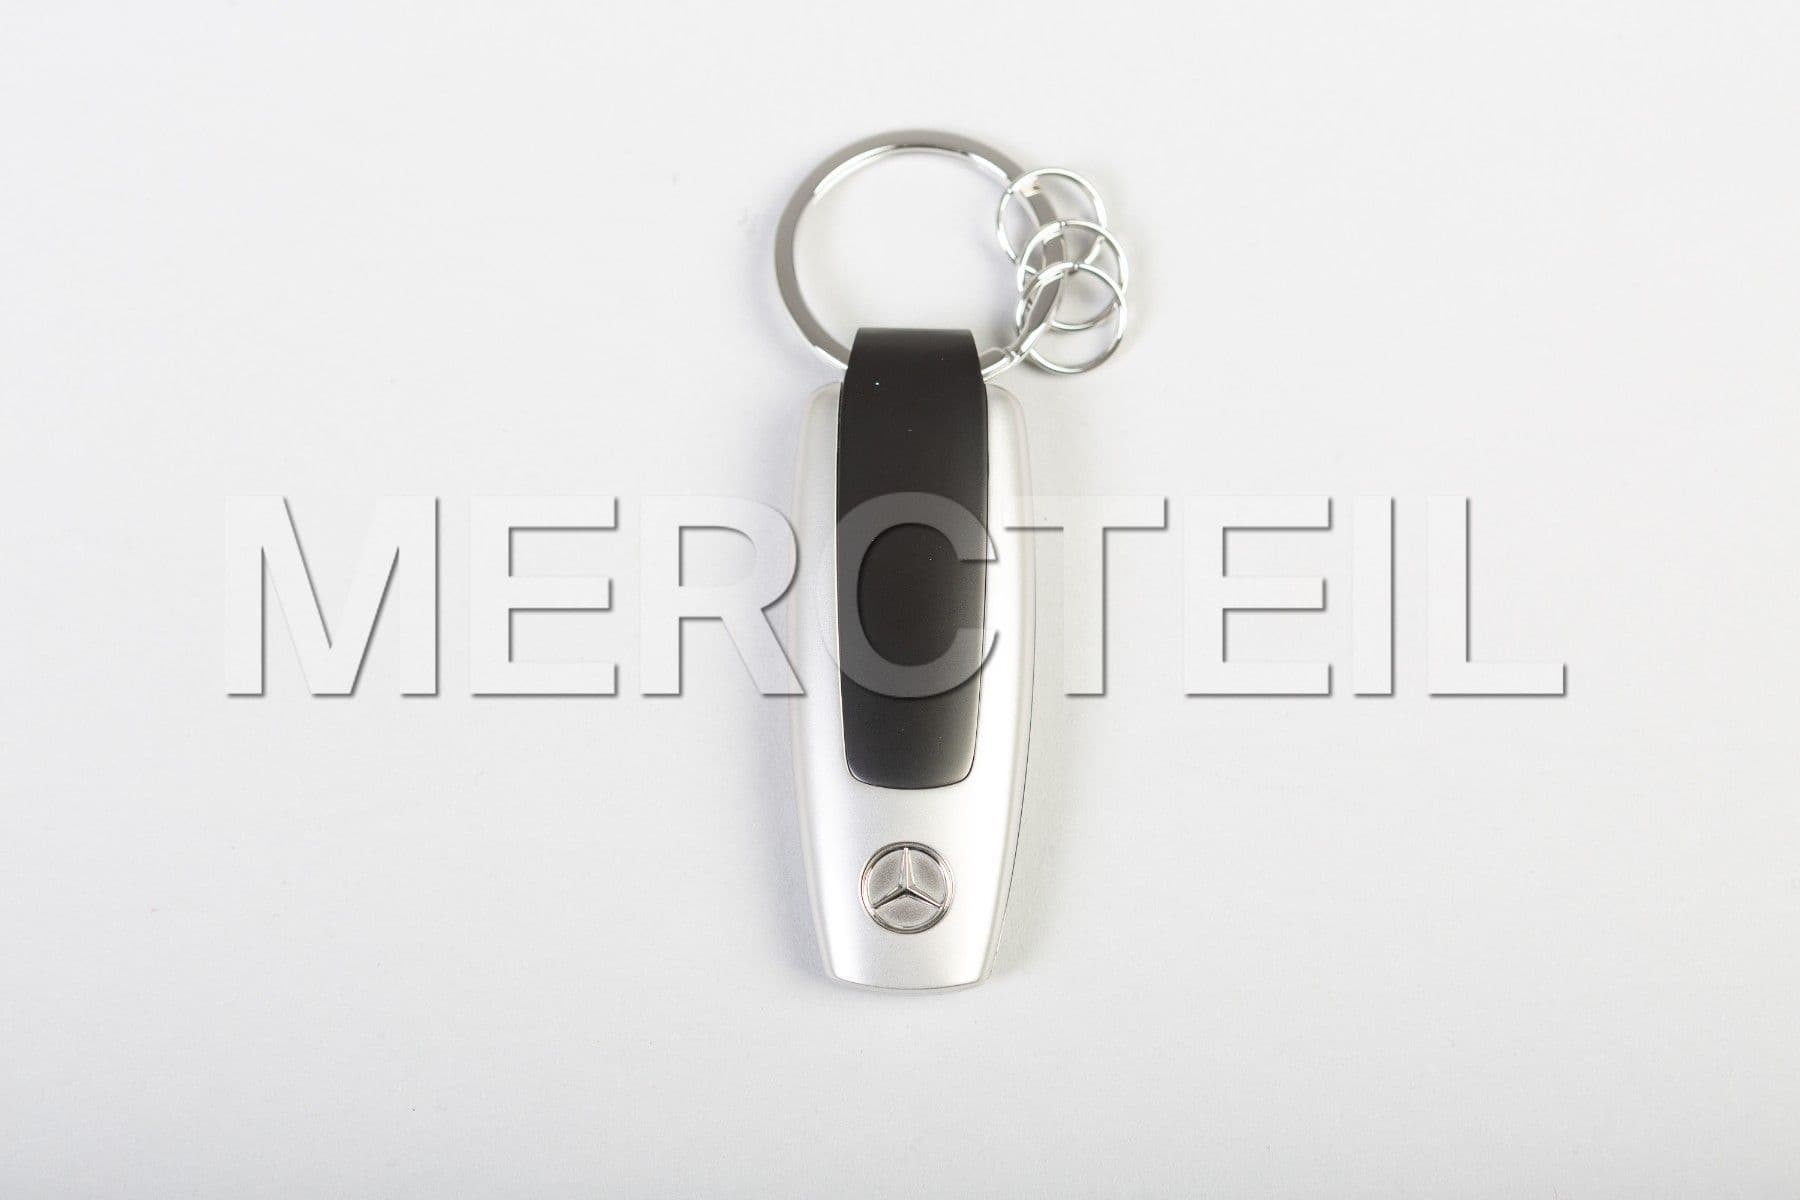 GLC Klasse Schlüsselanhänger Original Mercedes Benz Zubehör (Teilenummer: B66958425)